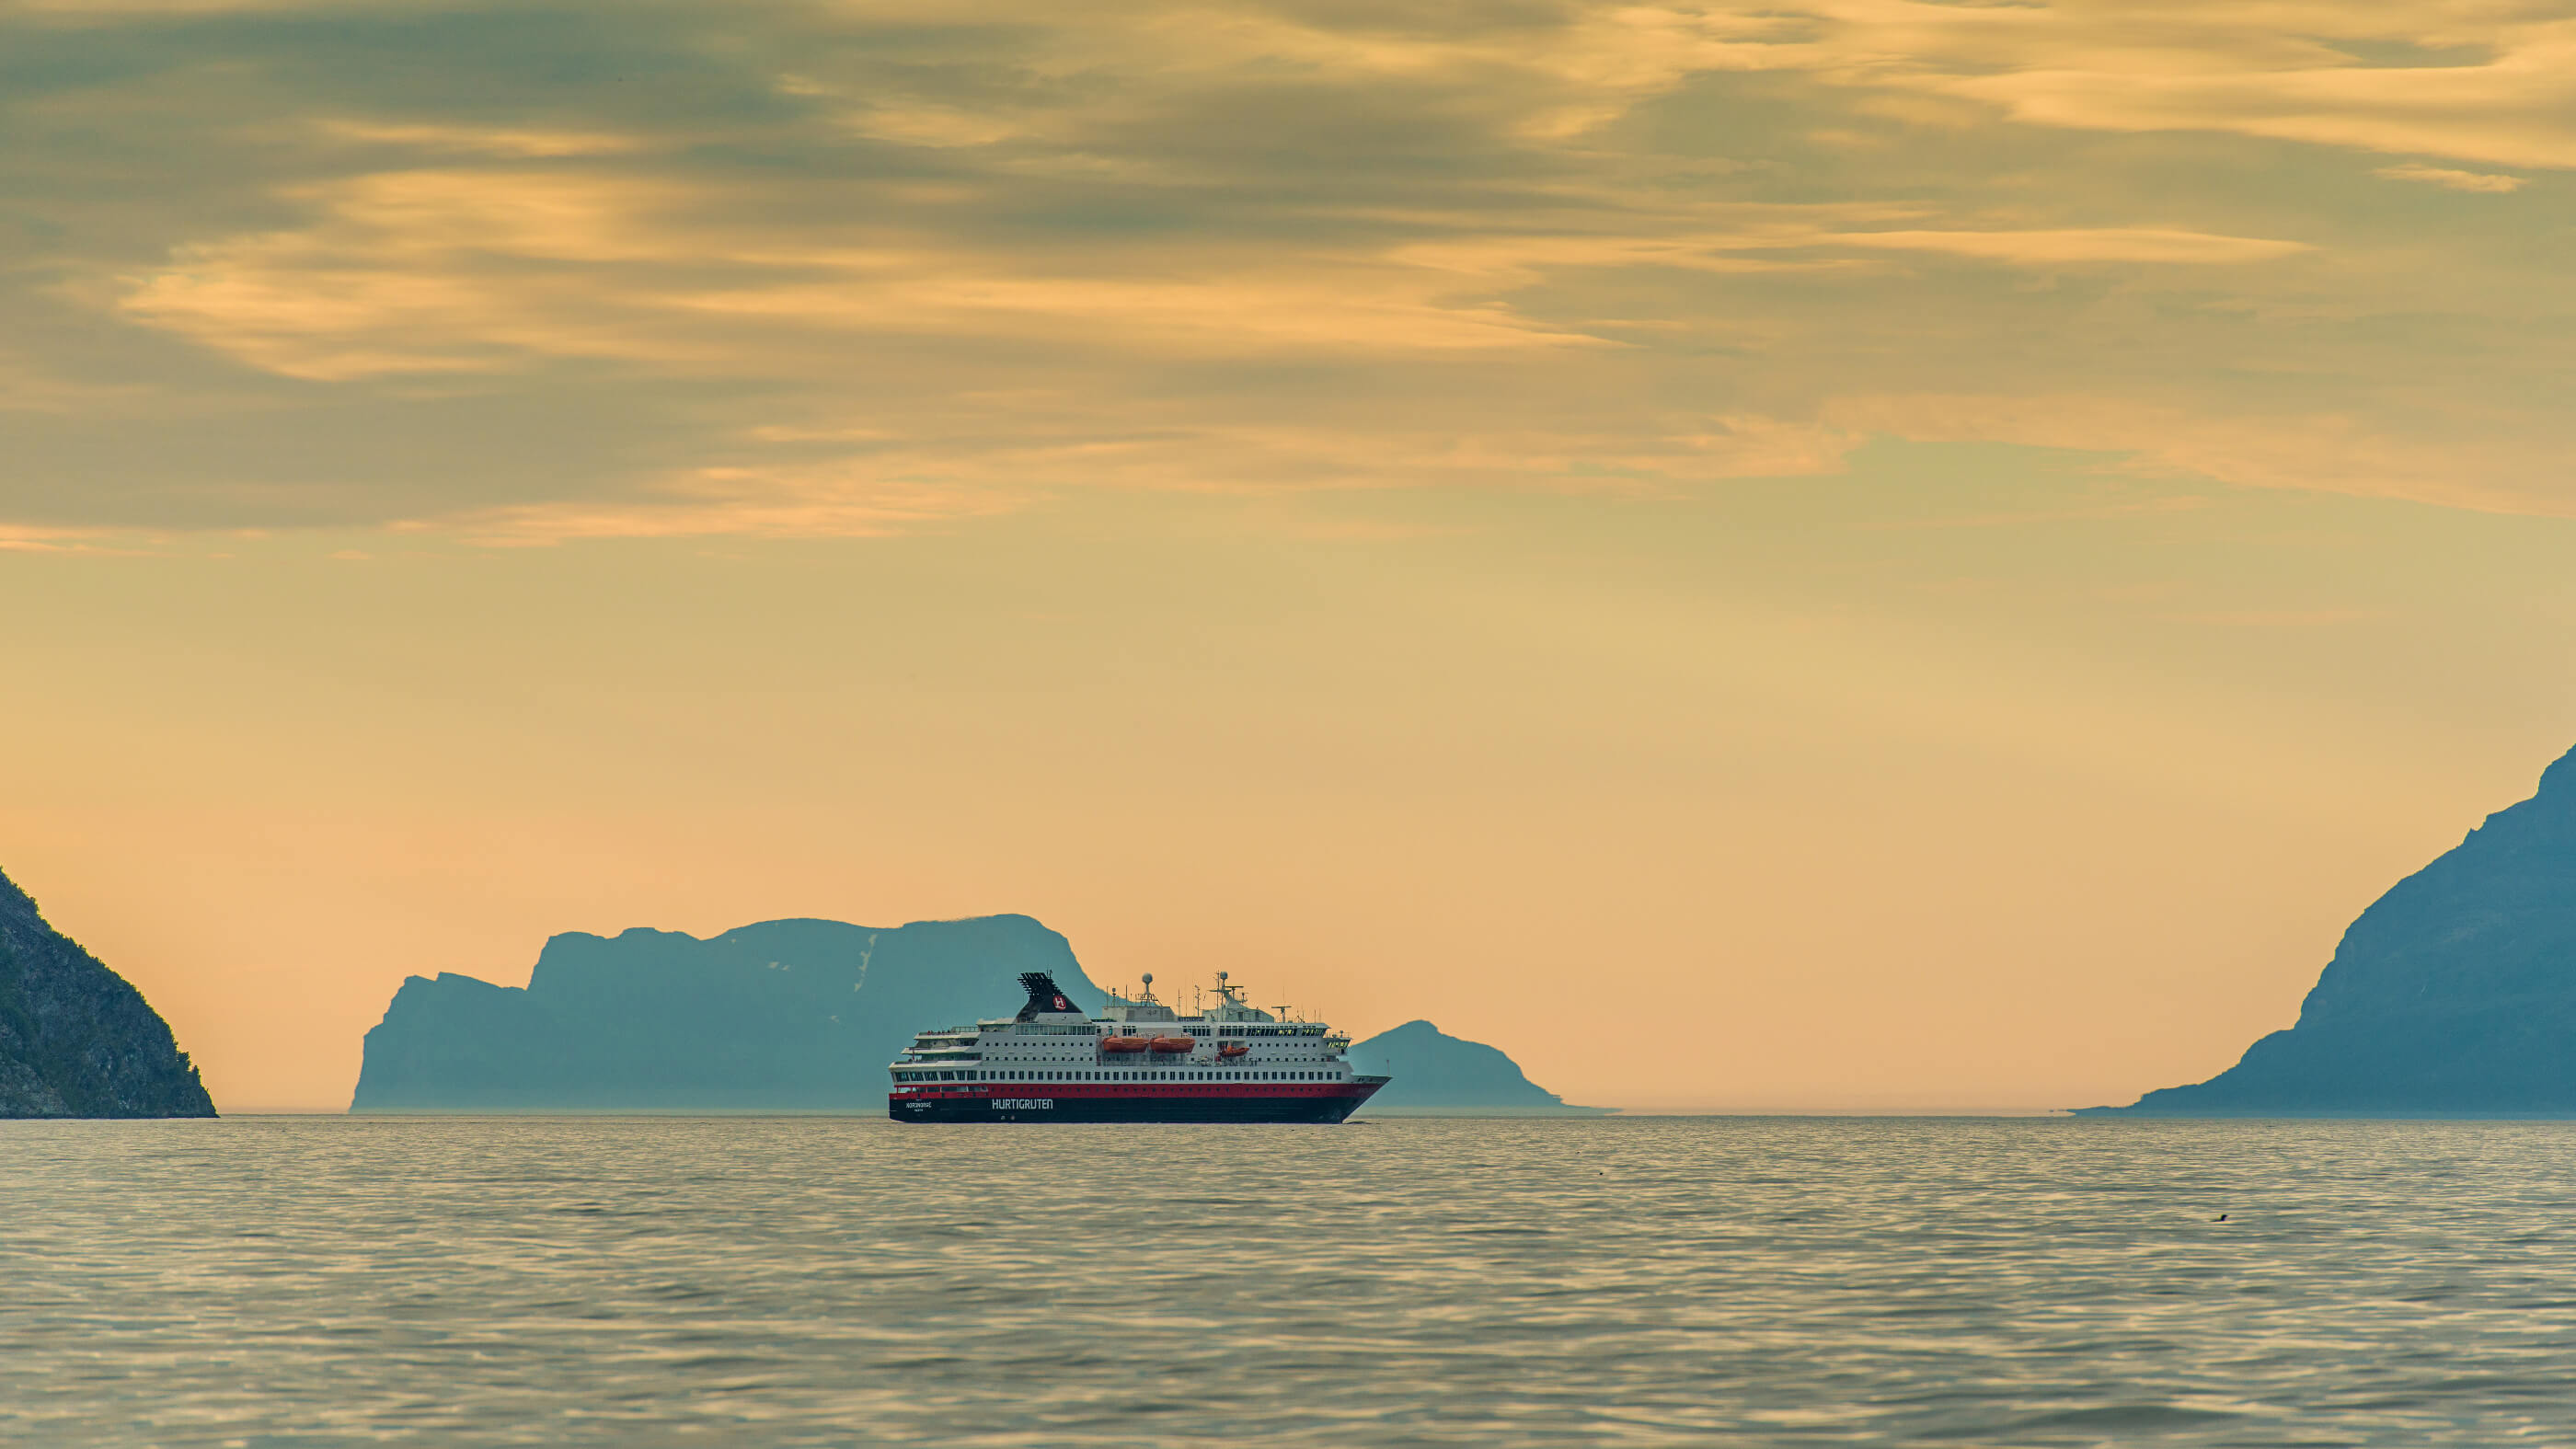 Hurtigruten ship at sea in sunset_16_9